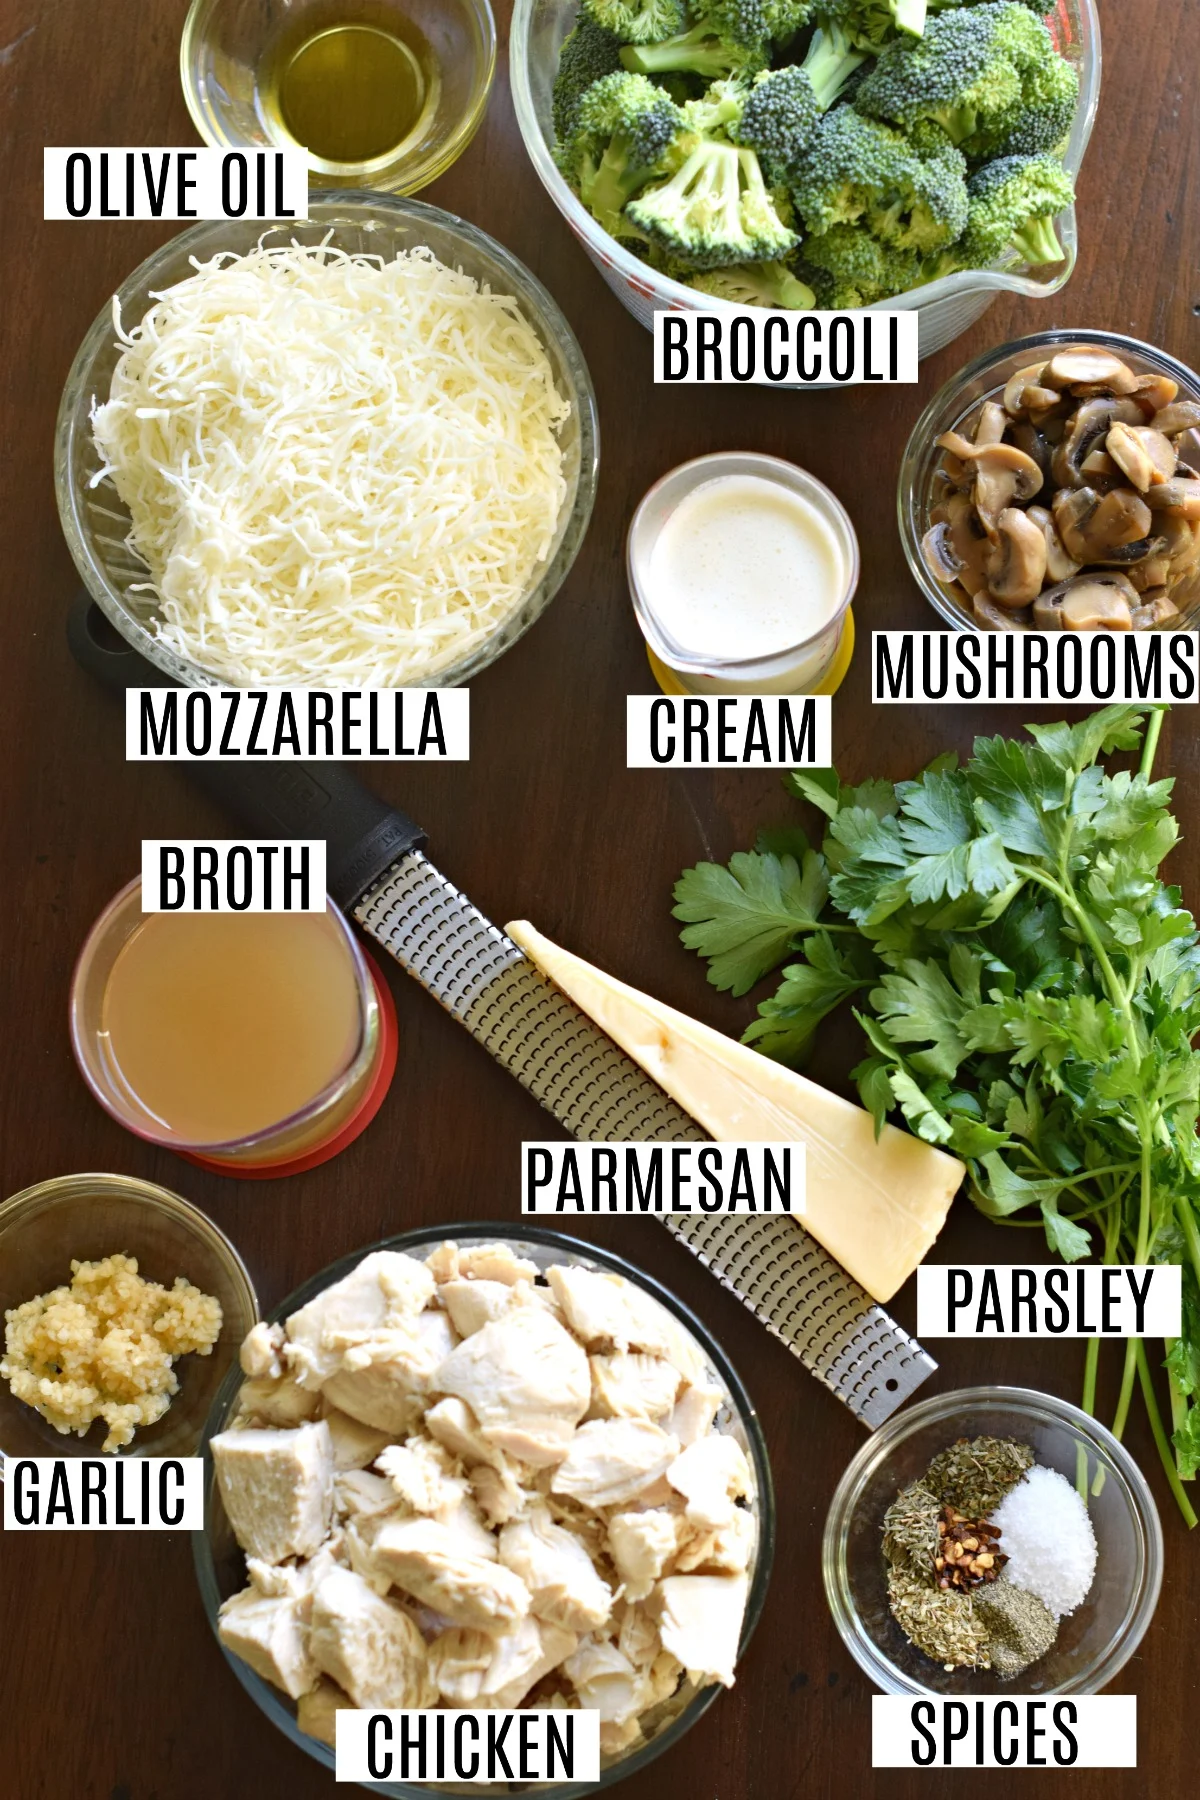 Ingredients for chicken broccoli casserole.